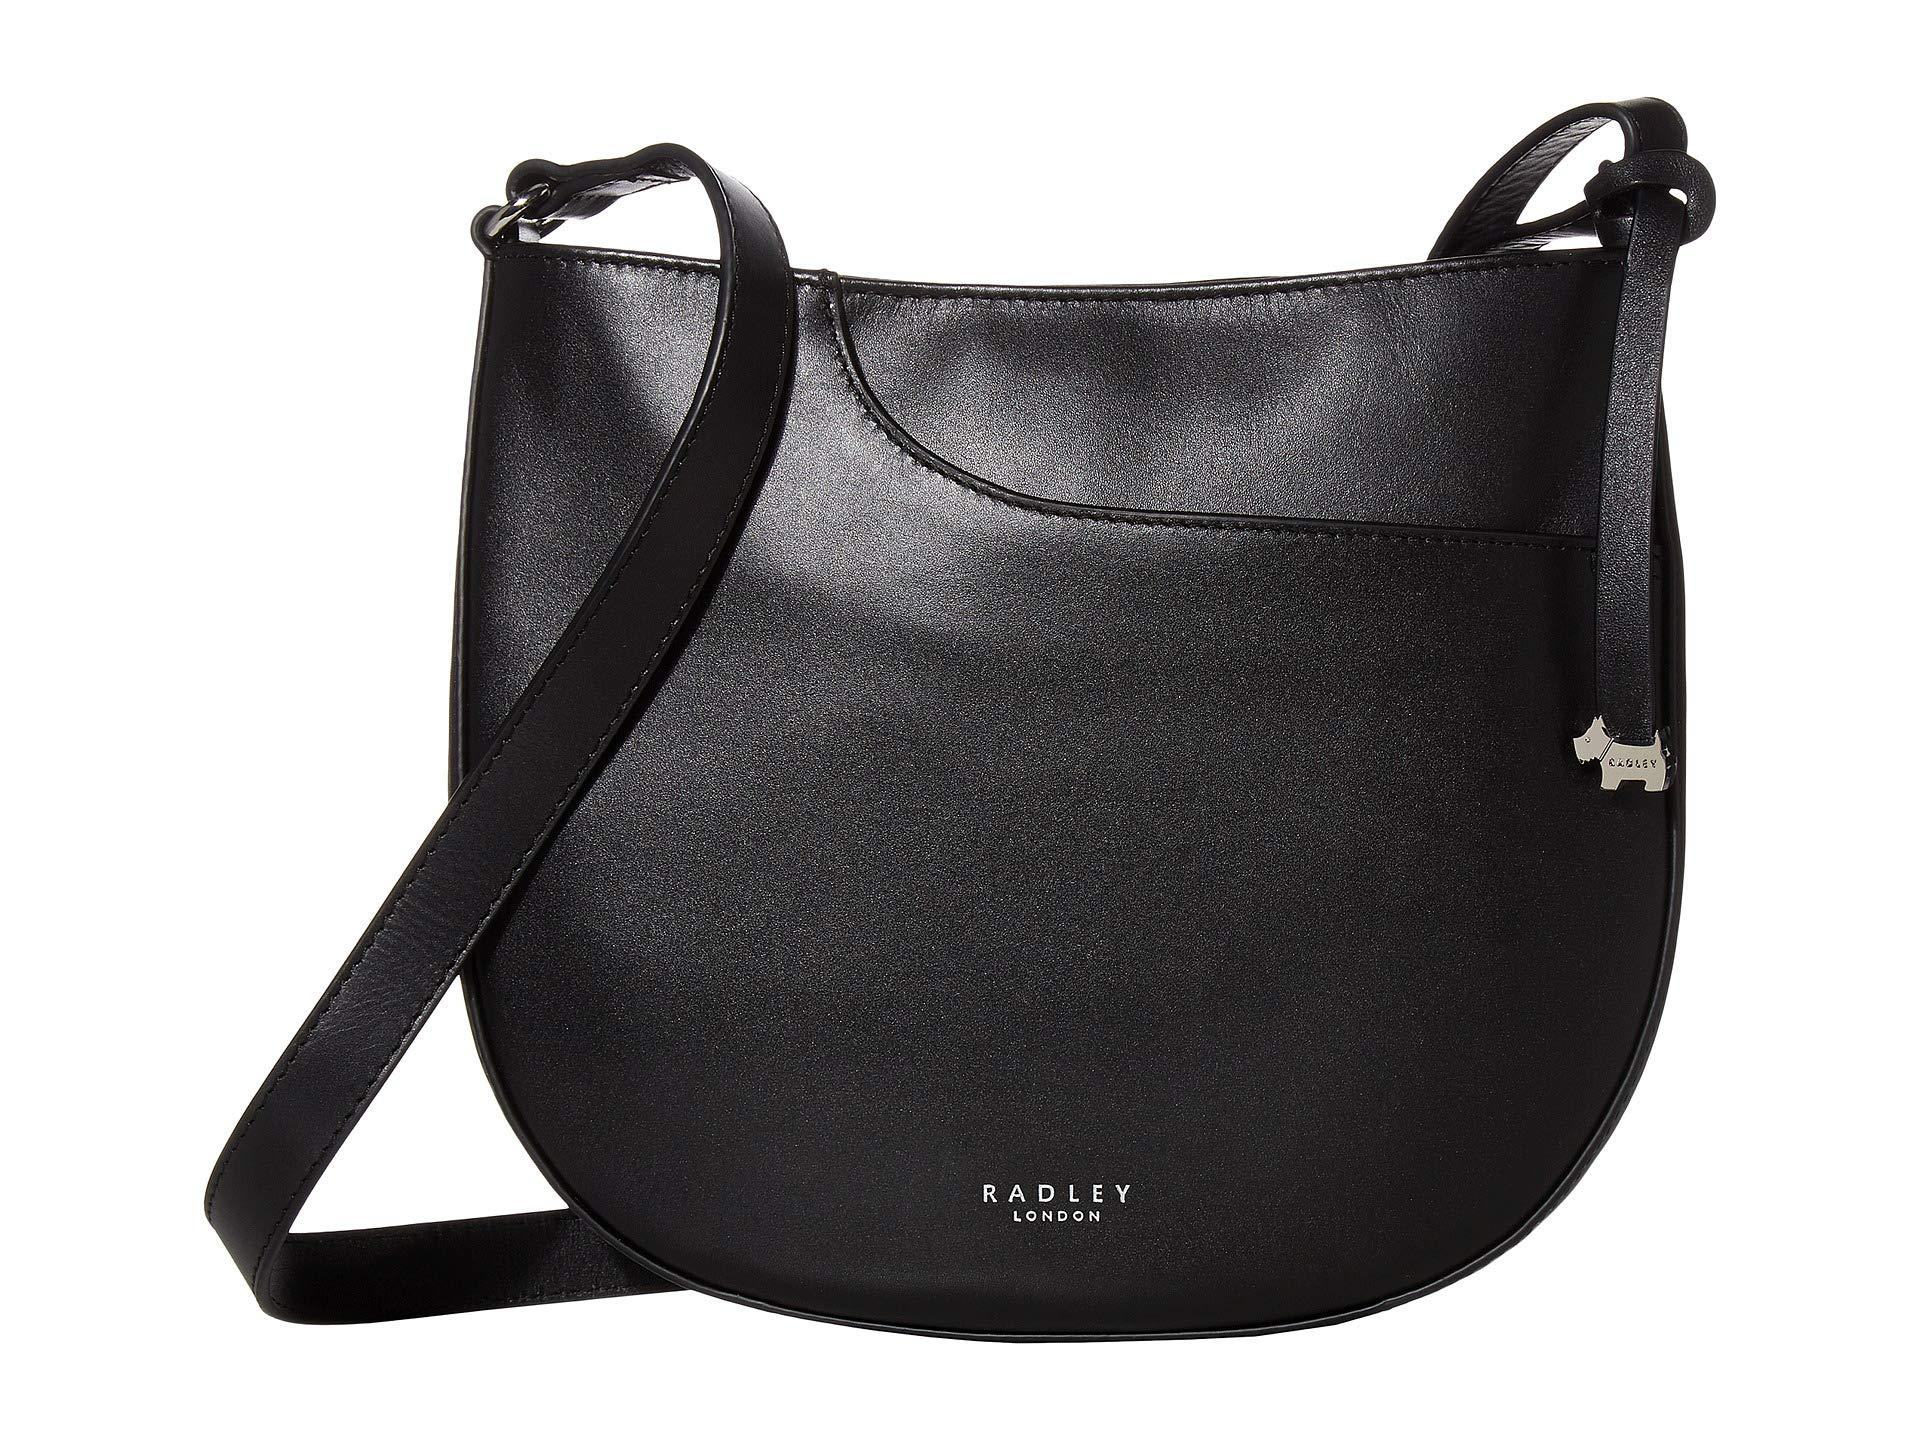 Radley London Pockets - Medium Zip Top Crossbody in Black